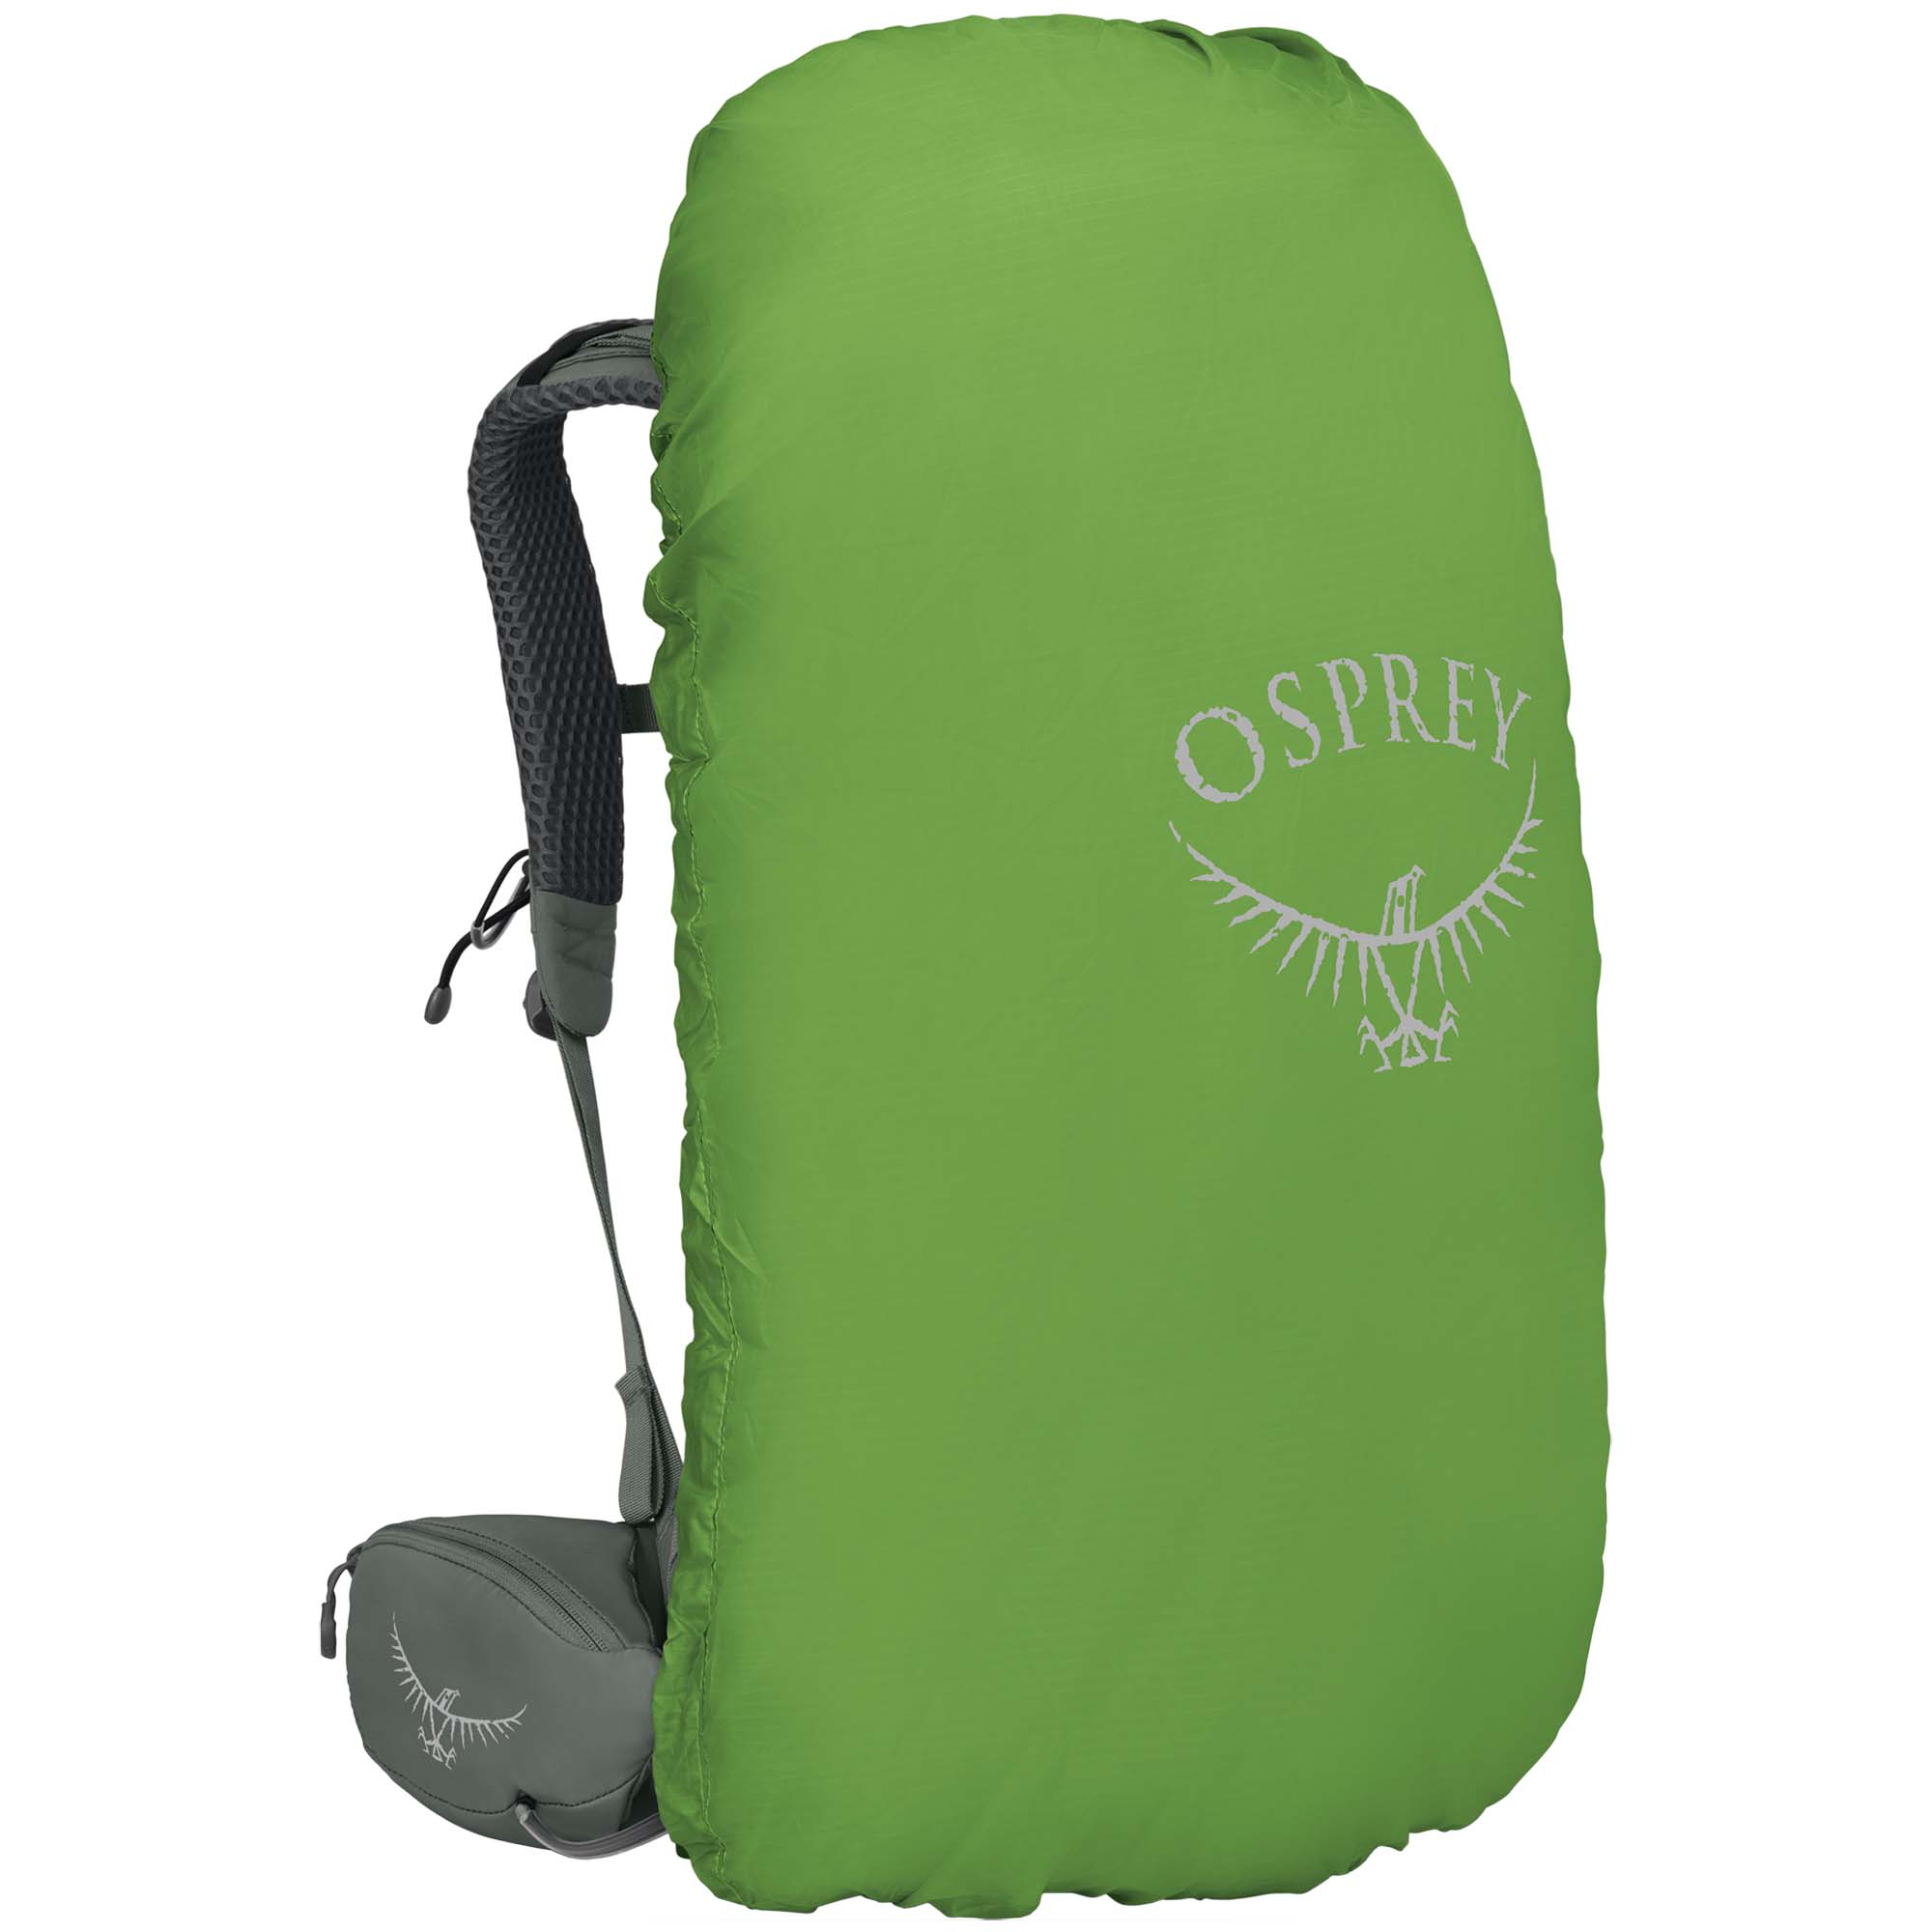 Osprey Kyte 38 Women's Trekking Backpack